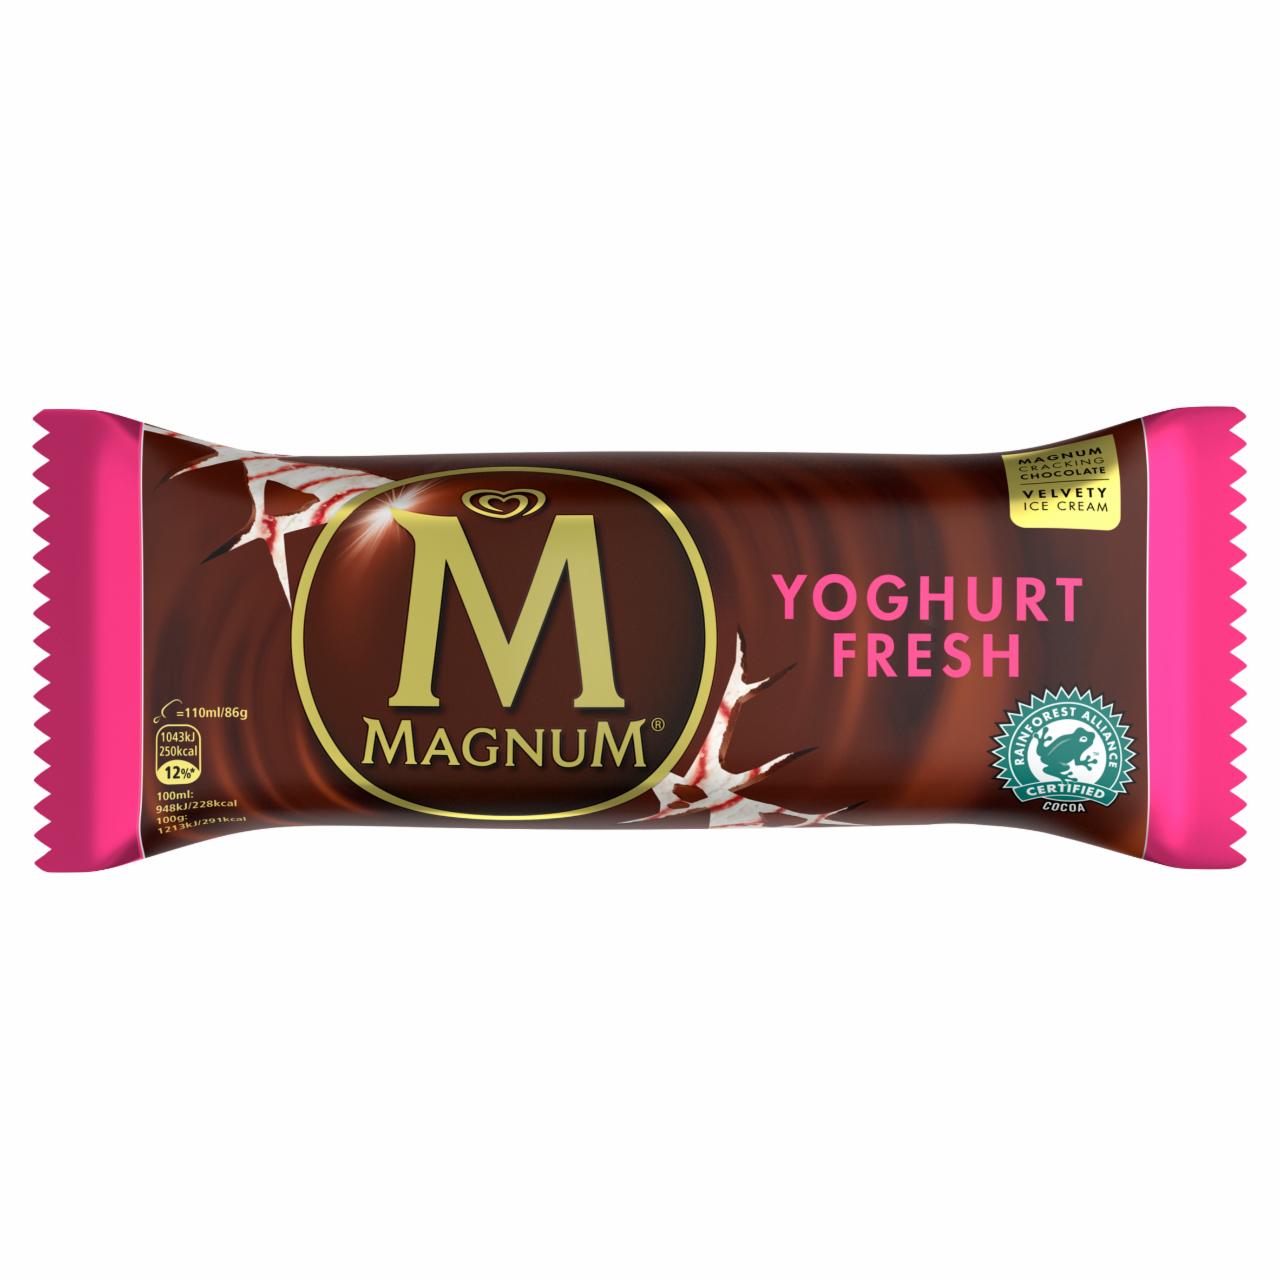 Képek - Magnum joghurtos jégkrém málnás szósszal, tejcsokoládé bevonattal 110 ml